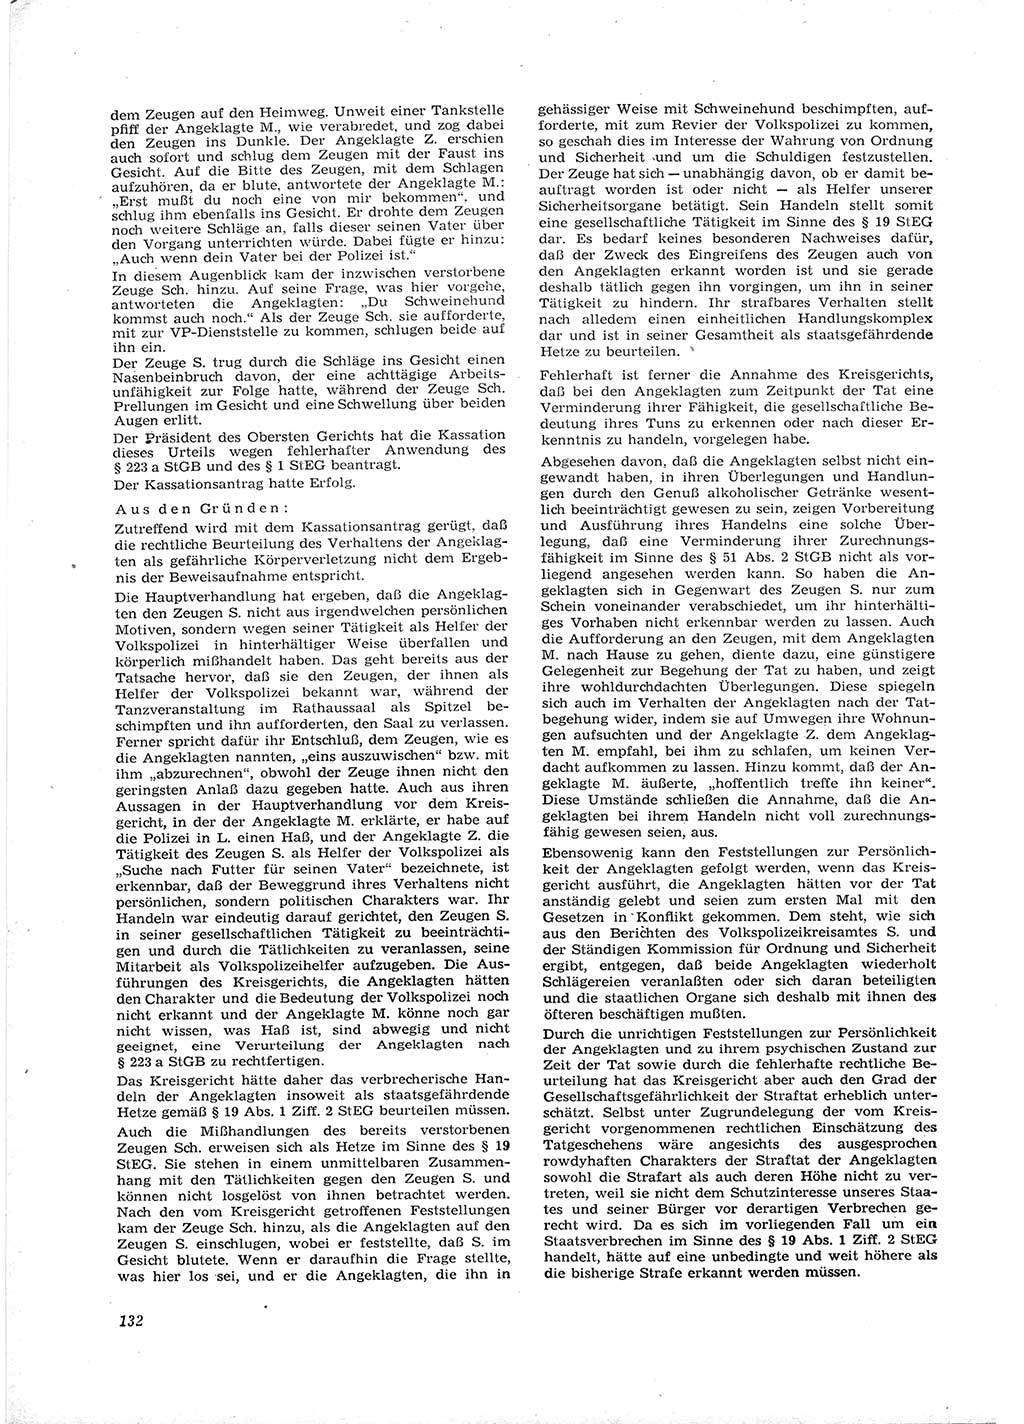 Neue Justiz (NJ), Zeitschrift für Recht und Rechtswissenschaft [Deutsche Demokratische Republik (DDR)], 16. Jahrgang 1962, Seite 132 (NJ DDR 1962, S. 132)